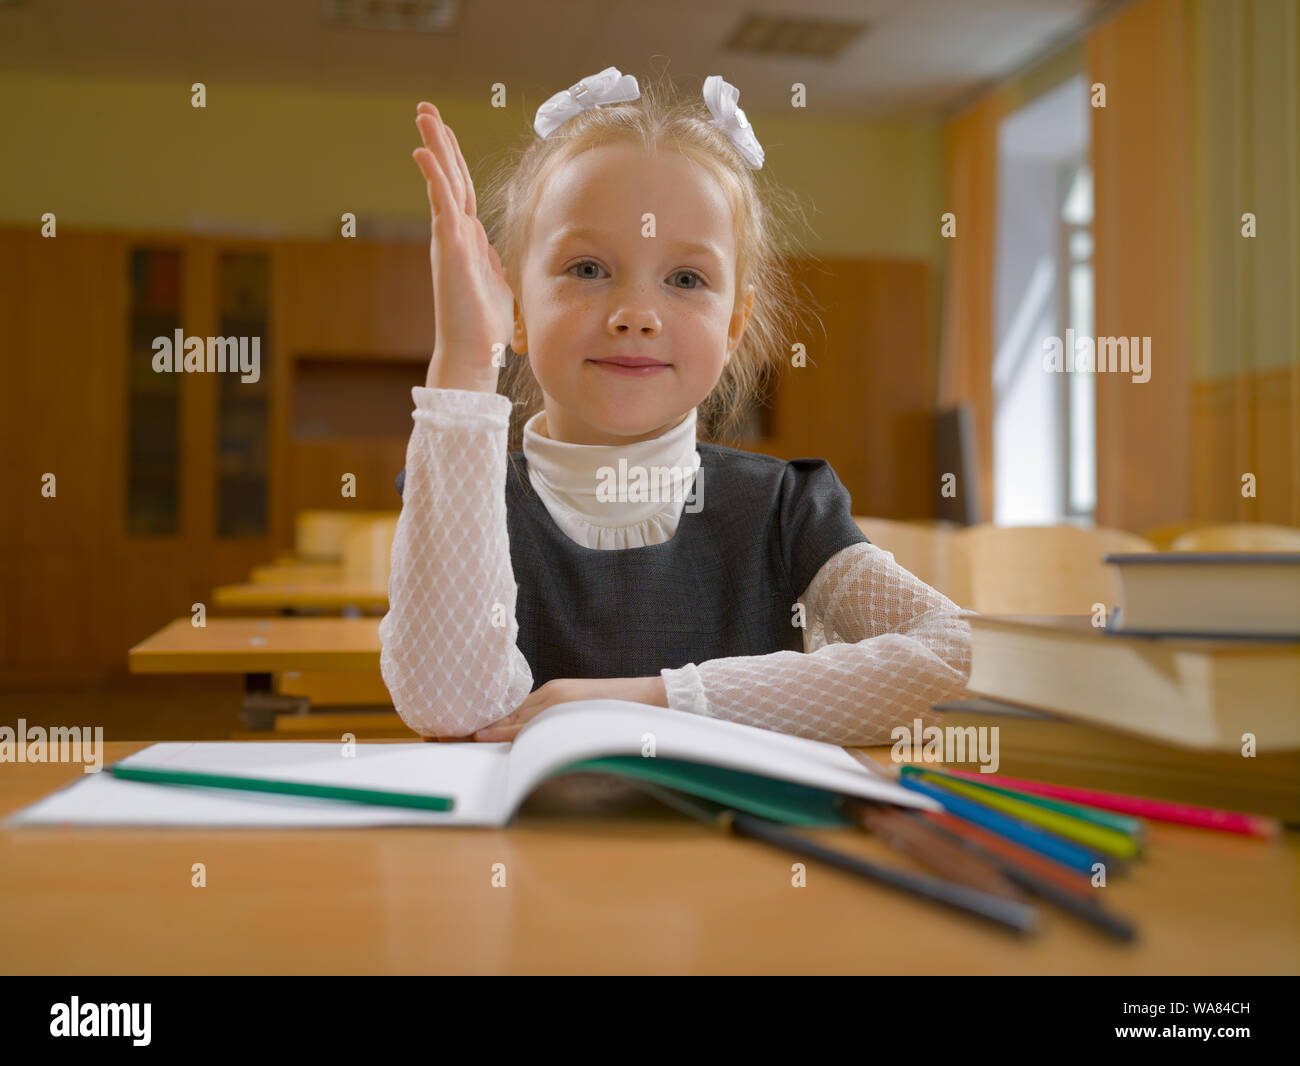 Petite fille à l'école catégorie à la leçon à son bureau avec un ordinateur portable, crayons et livres Banque D'Images